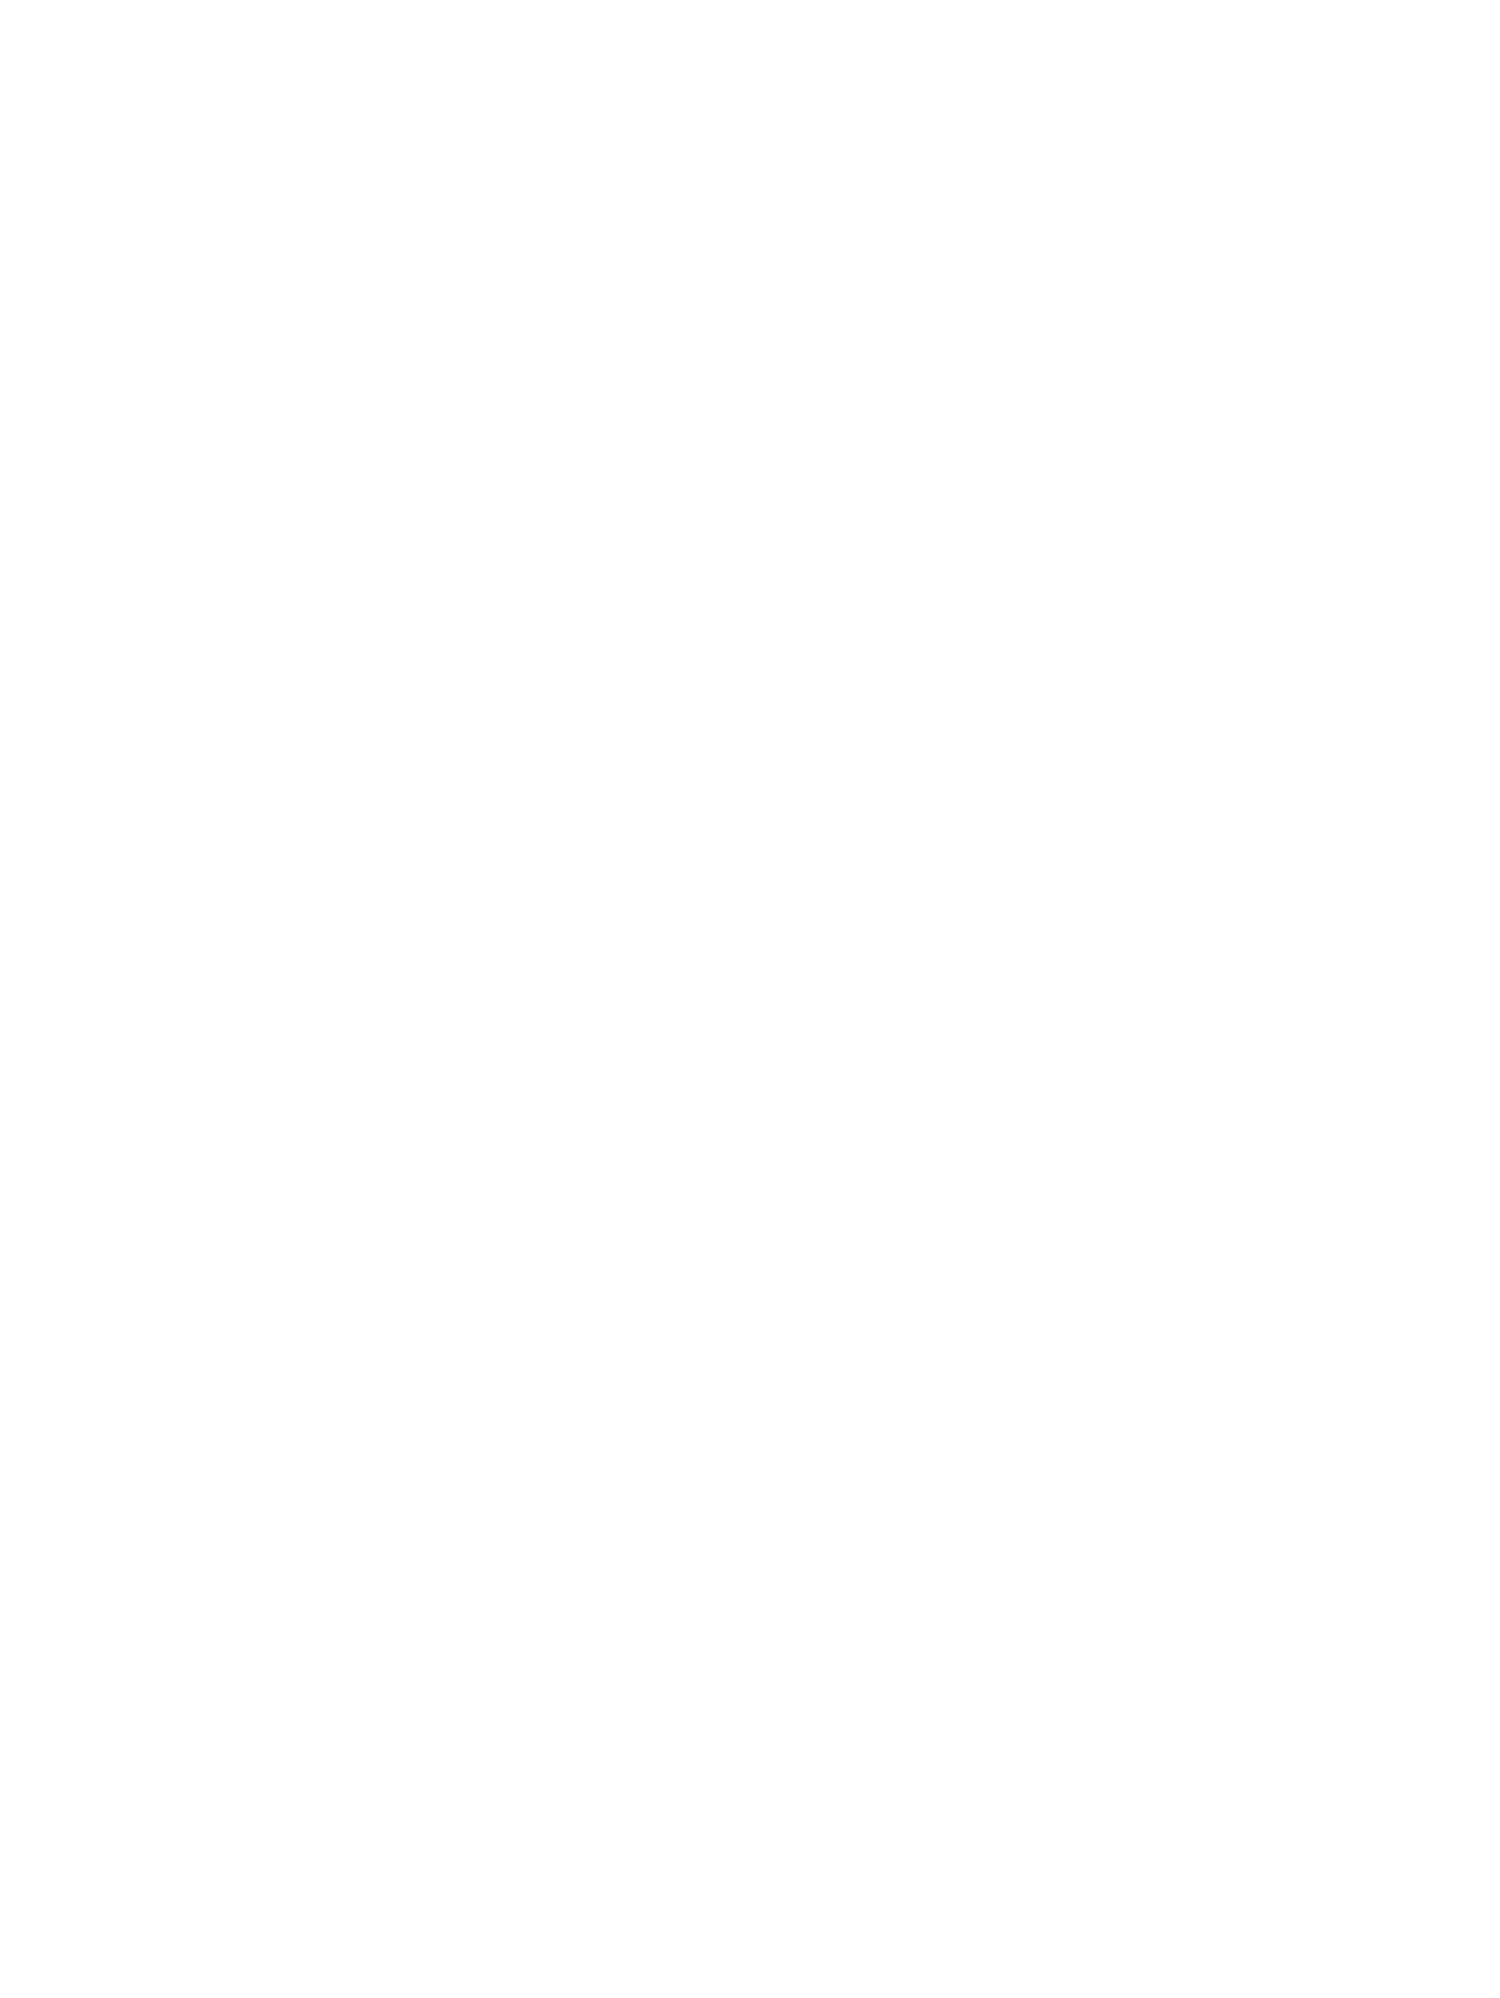 One Eleven Design